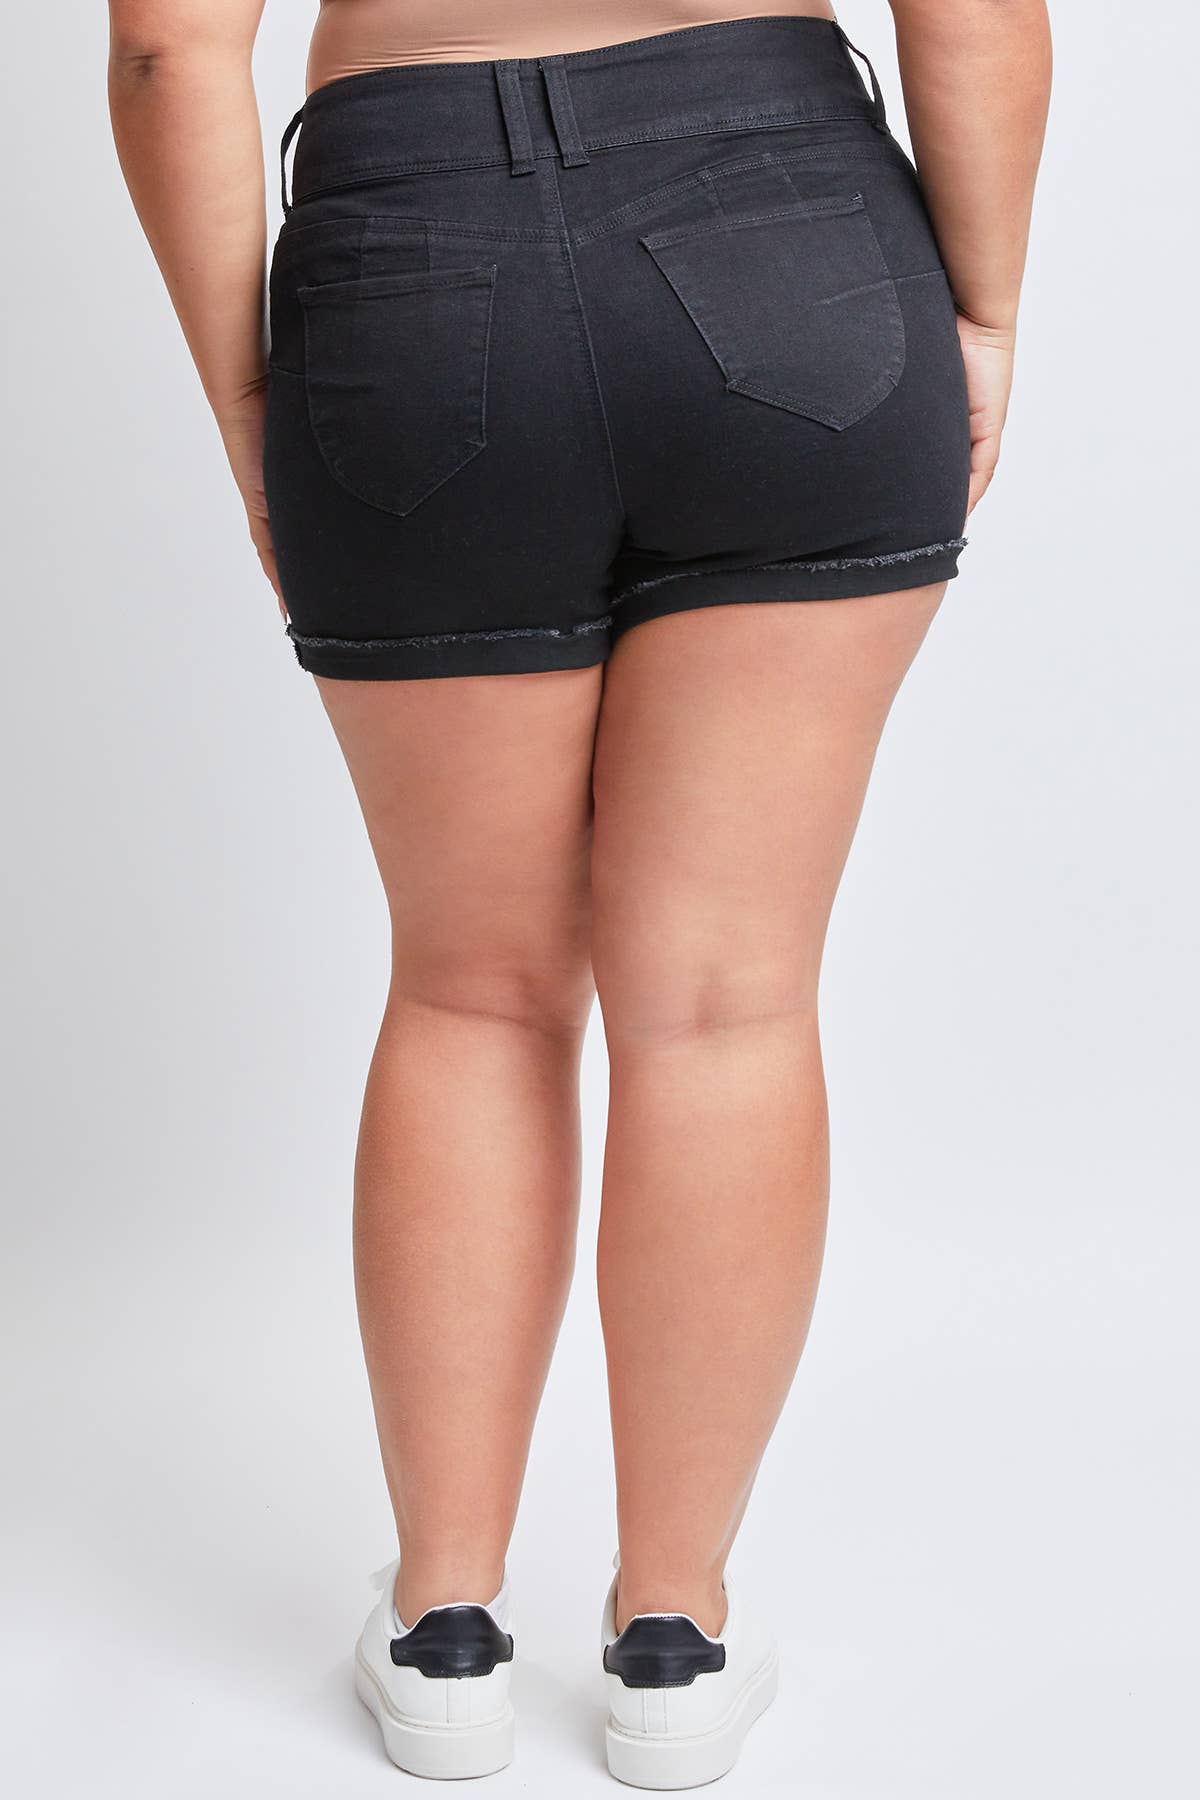 WannaBettaButt Black Cuffed Denim Shorts-Bottoms-Revive Boutique-14-Revive Boutique